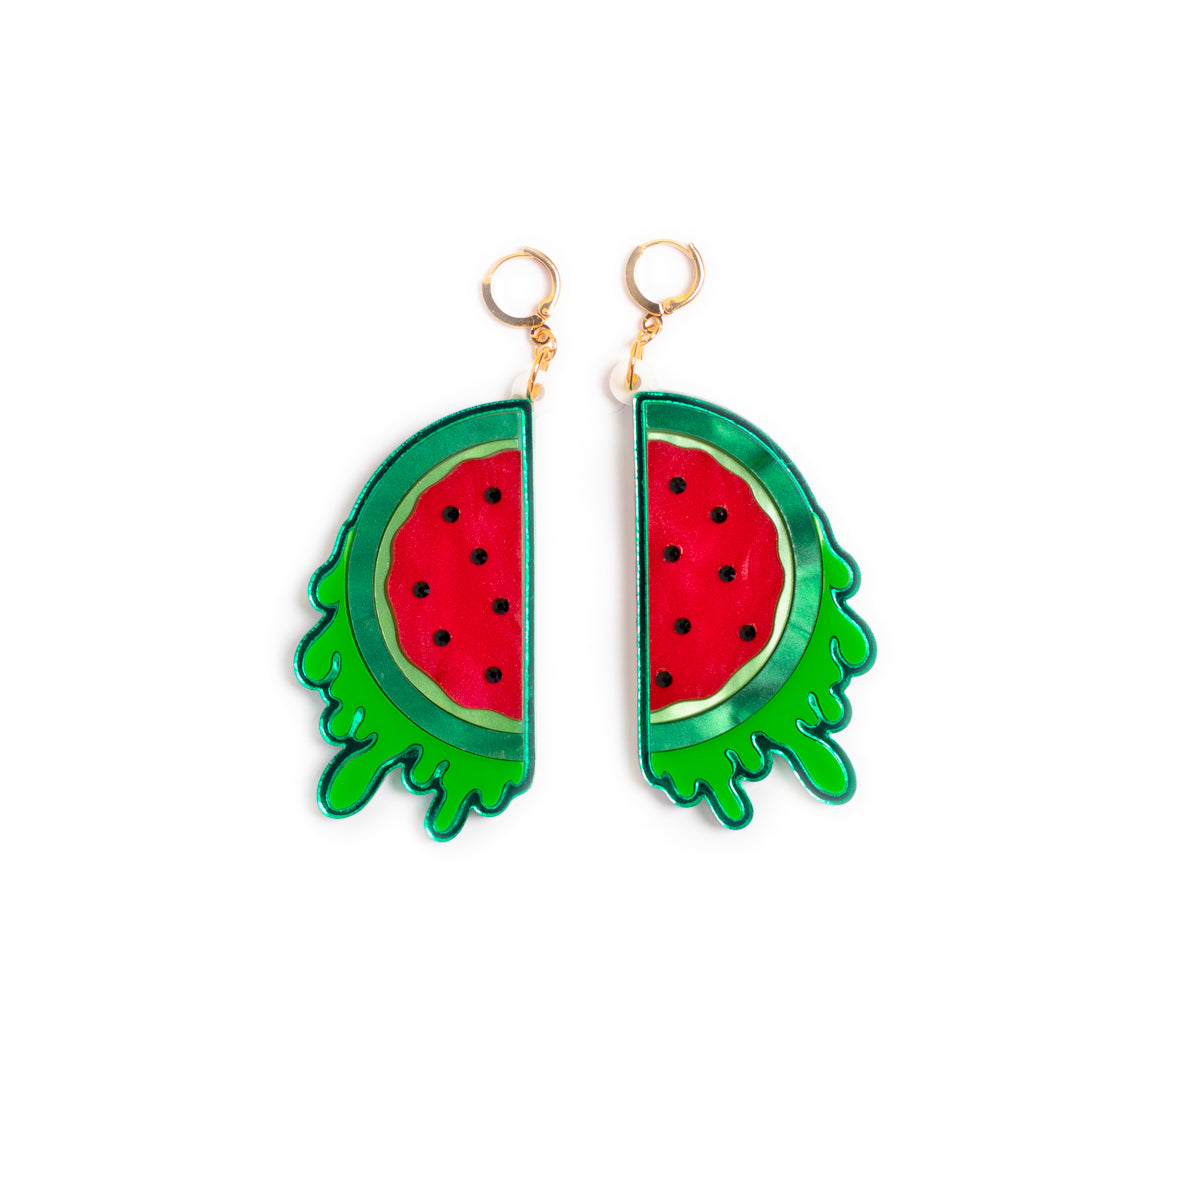 The Watermelon Earrings